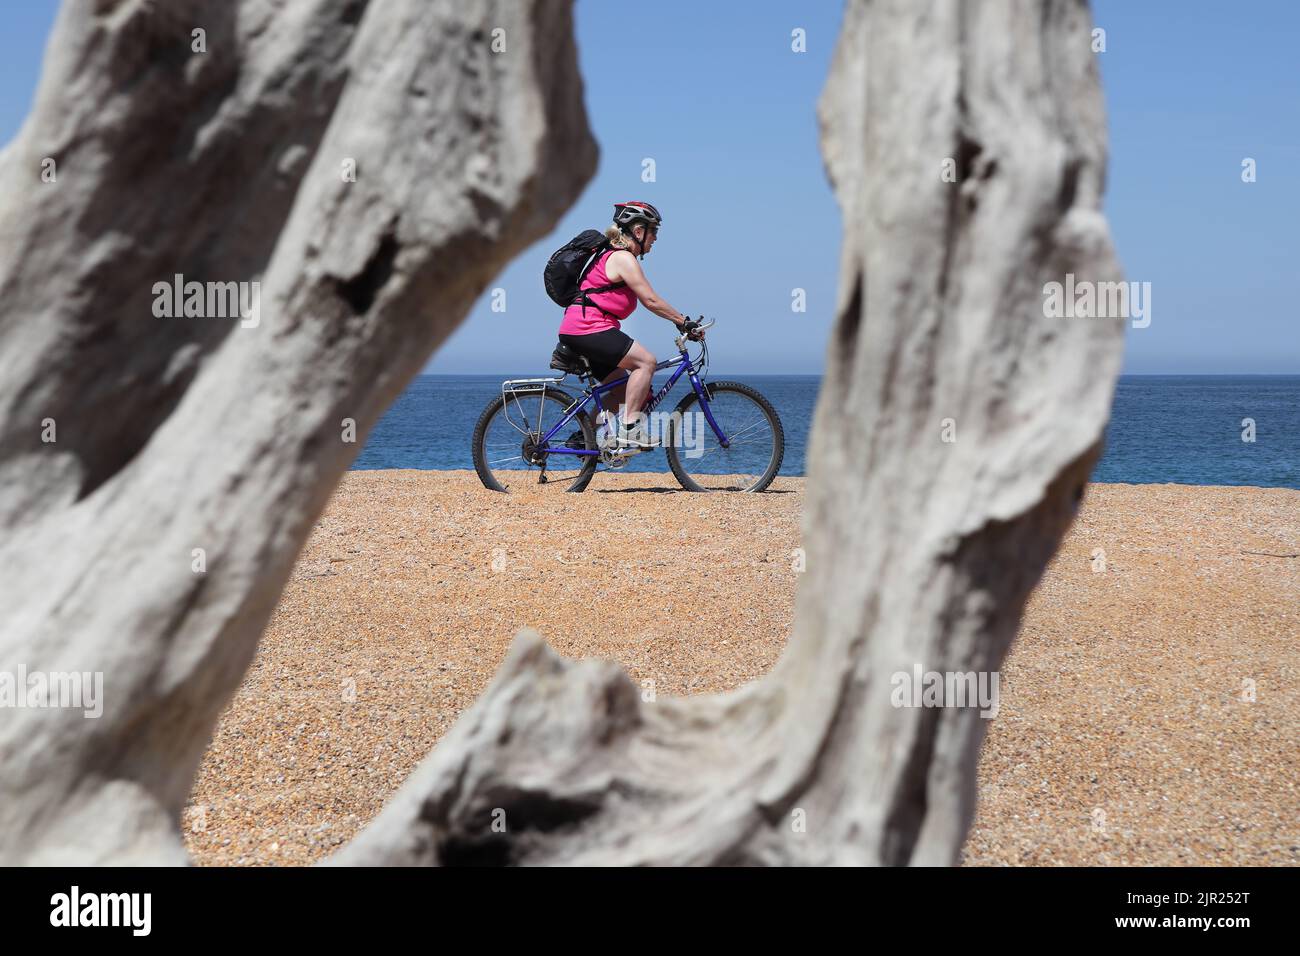 Ciclista en una playa desierta de arena enmarcada por un pedazo envejecido de madera a la deriva, Capbreton, Francia Foto de stock